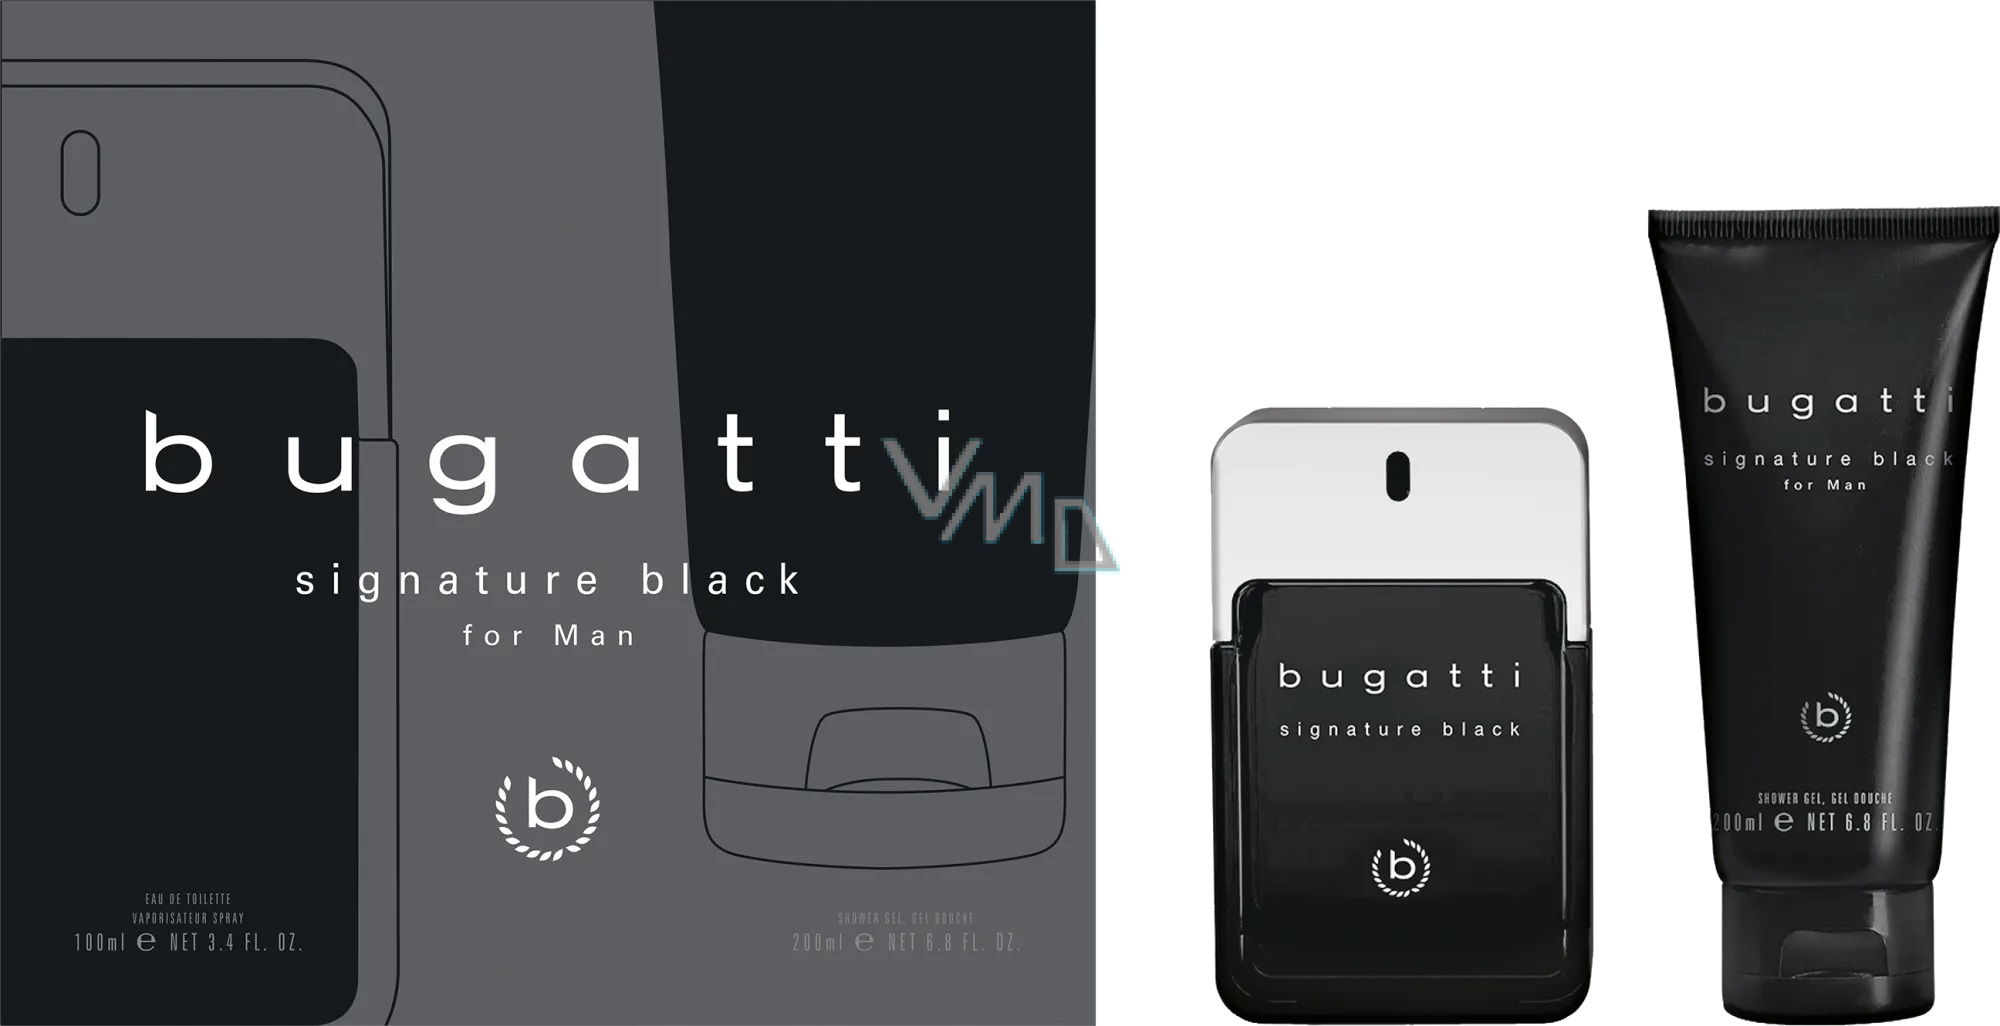 Bugatti Signature Black eau de for - 100 toilette gel VMD parfumerie - shower ml drogerie gift men + set 200 ml